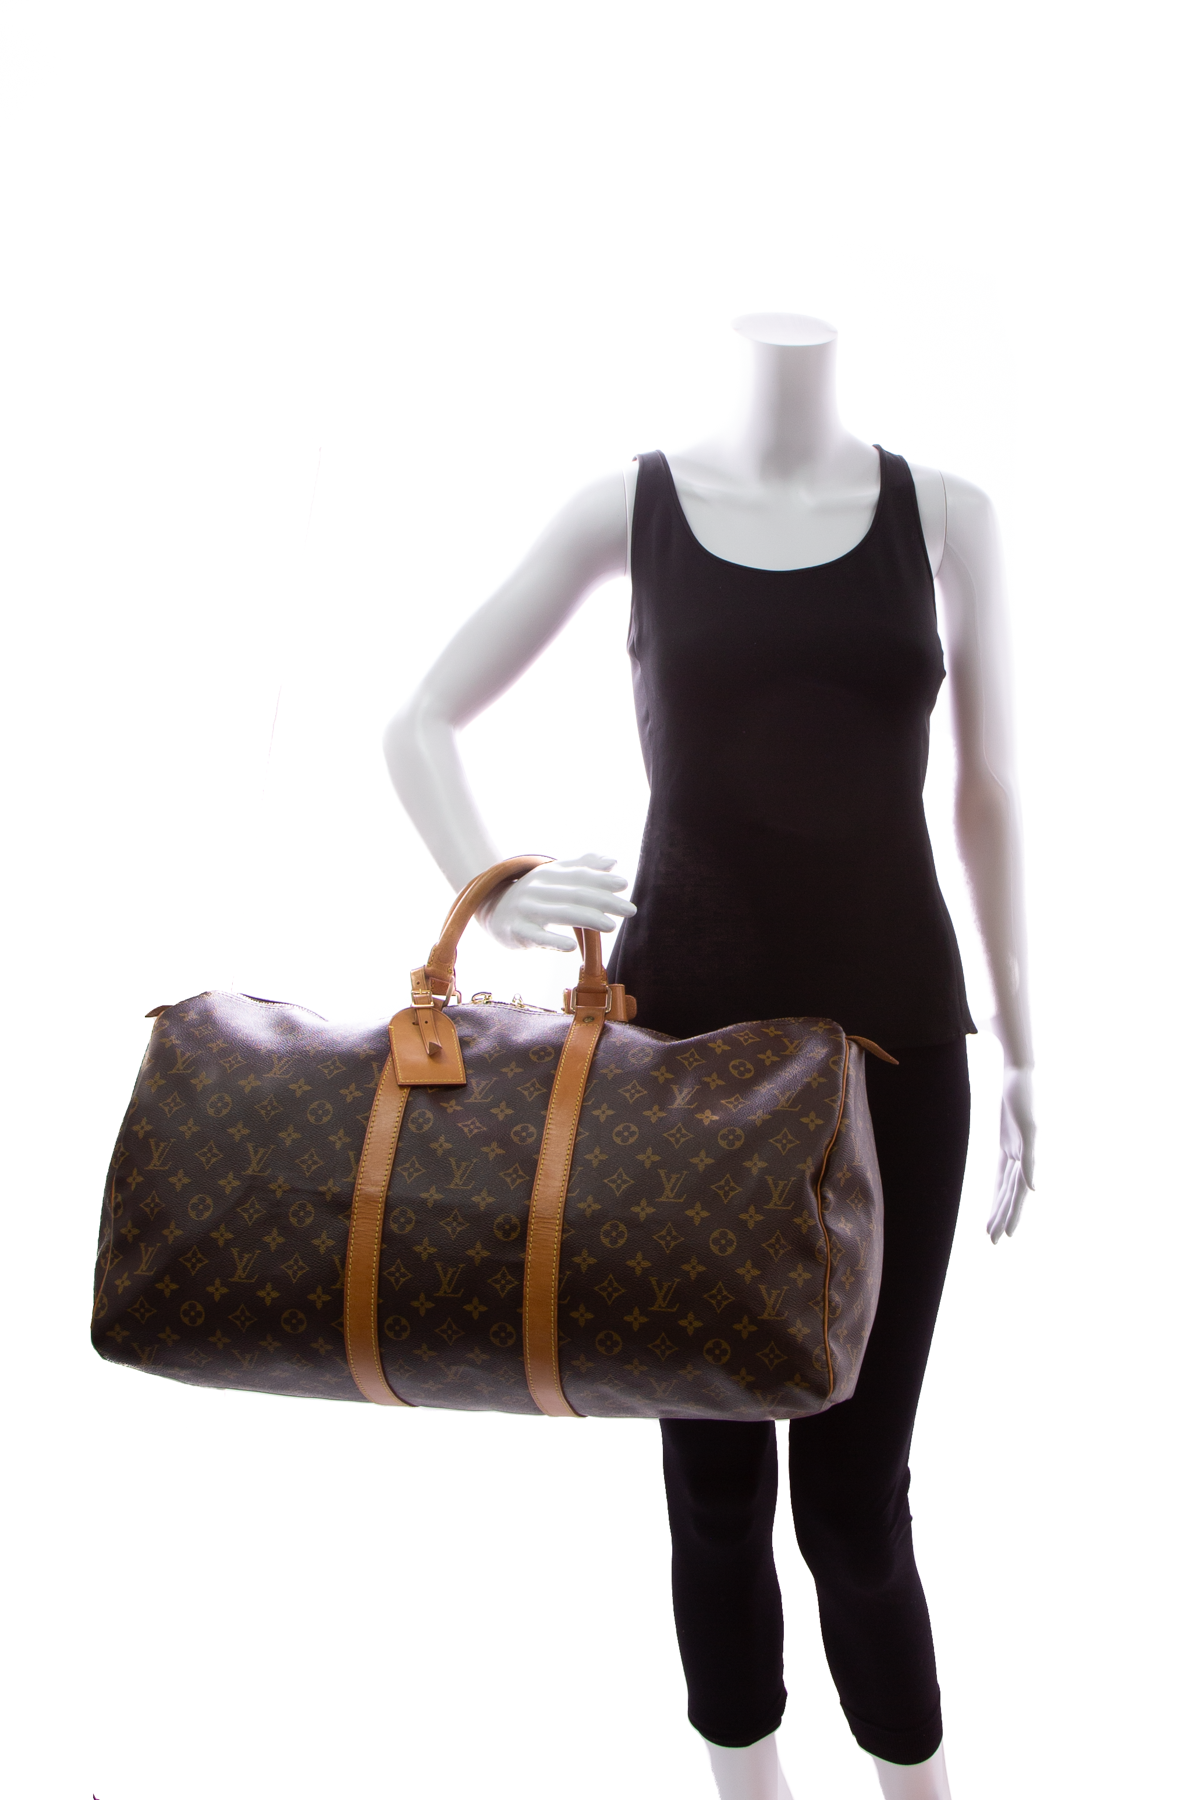 Louis Vuitton Monogram Keepall Bag